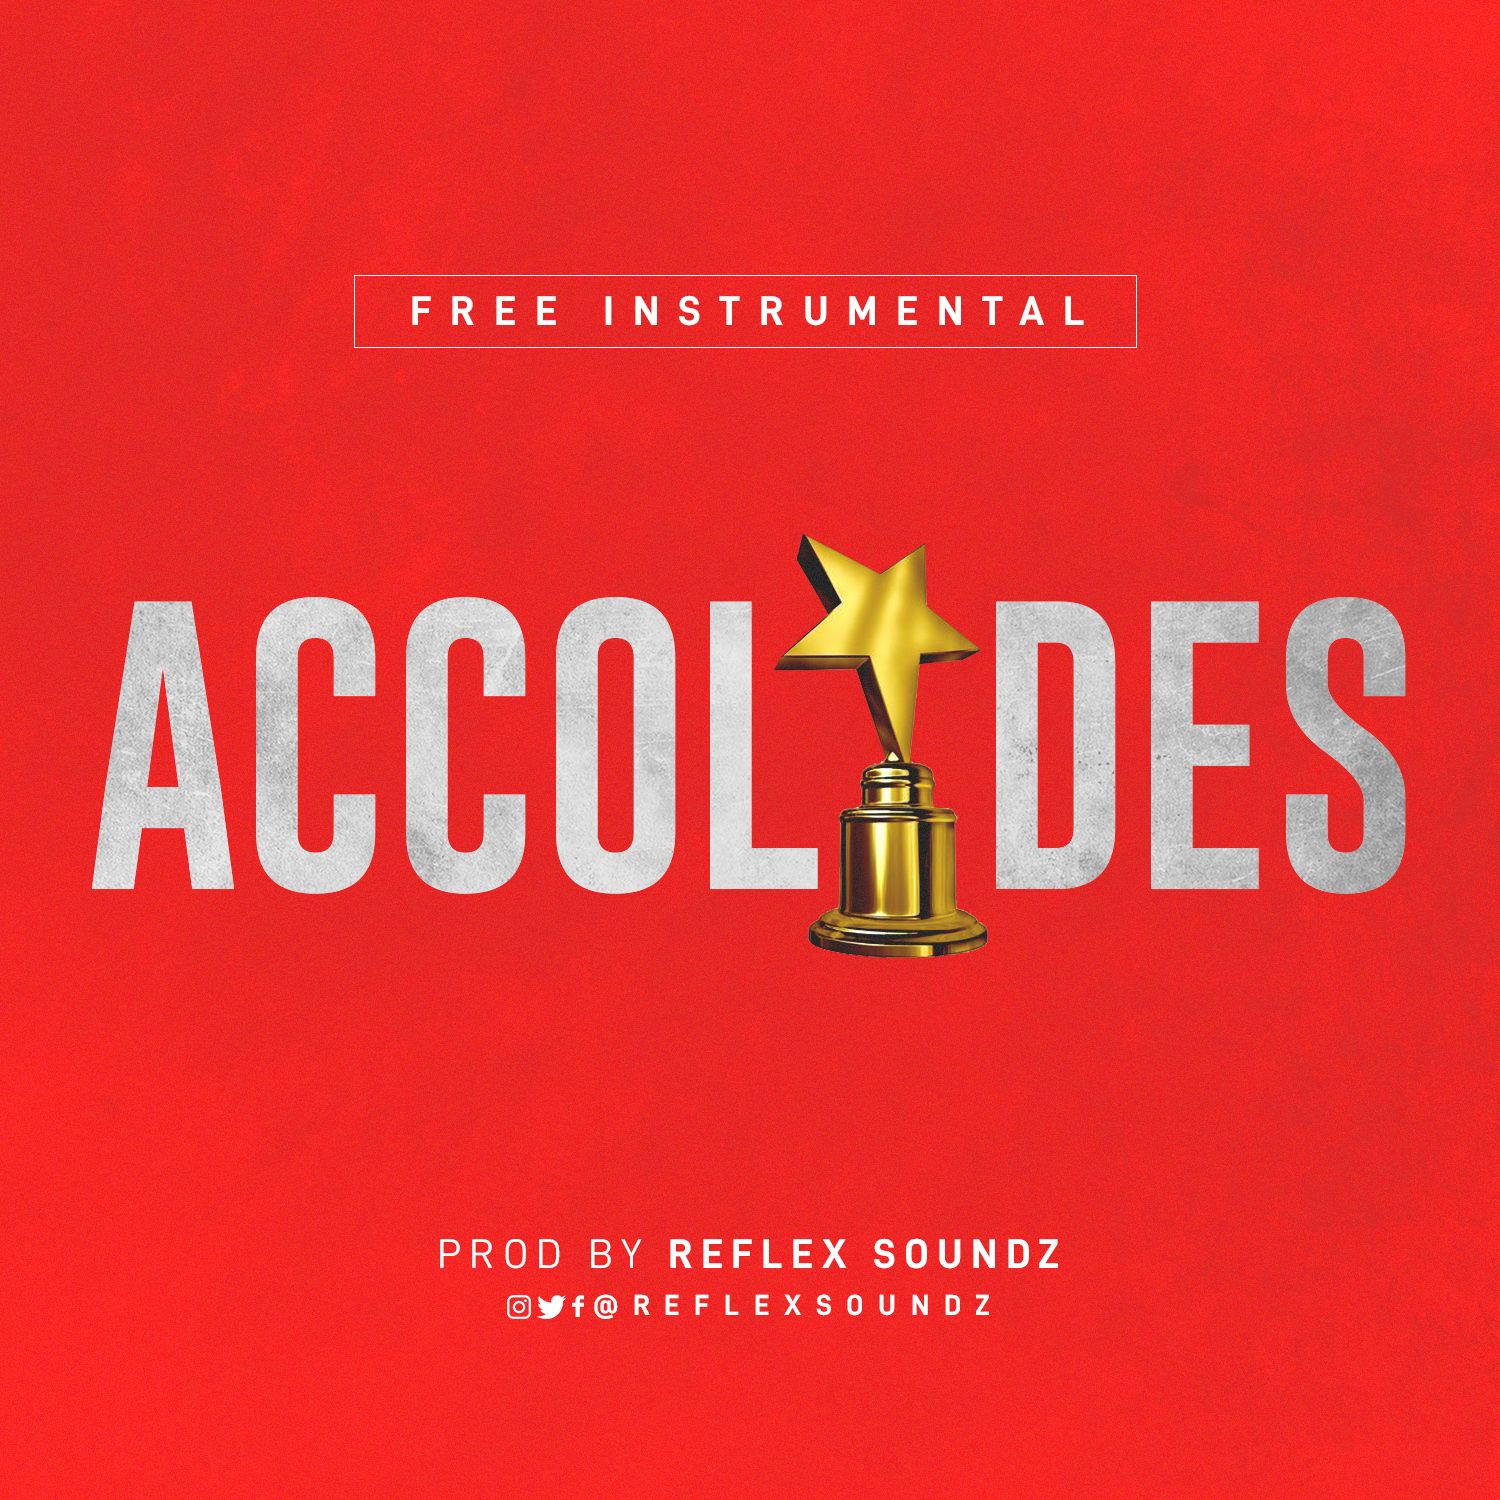 Reflex Soundz - ACCOLADES (Free Instrumental) Artwork | AceWorldTeam.com